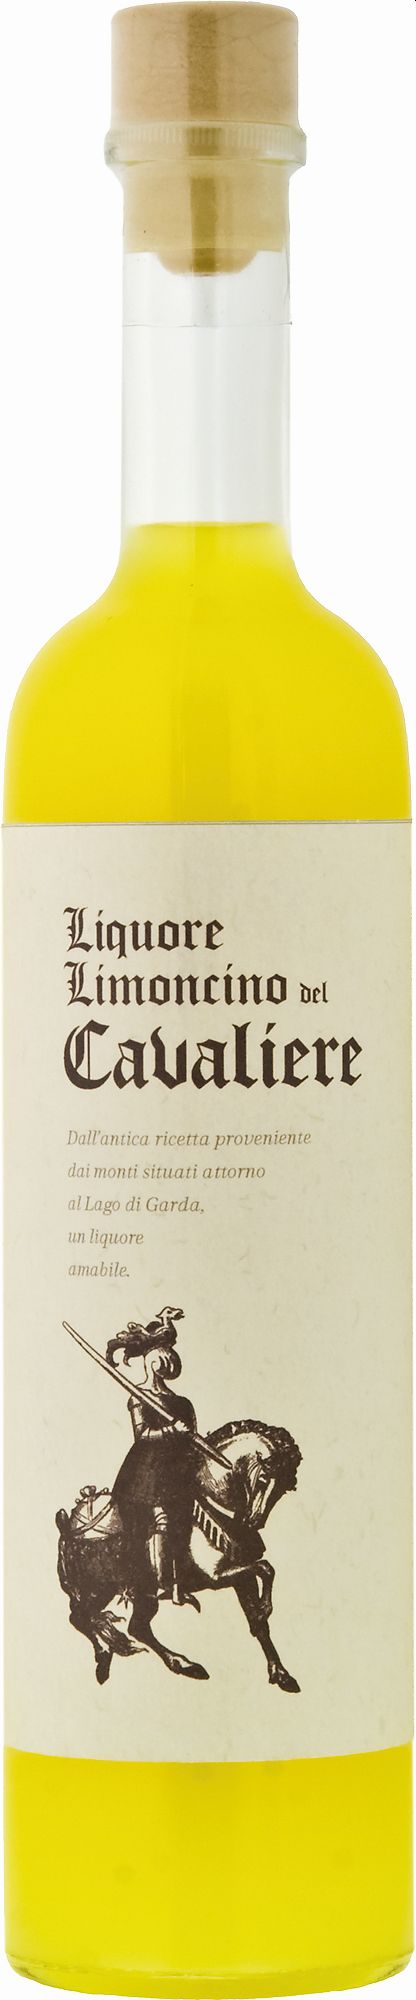 Marzadro Cavaliere Liquore Limoncino 0,5Ltr